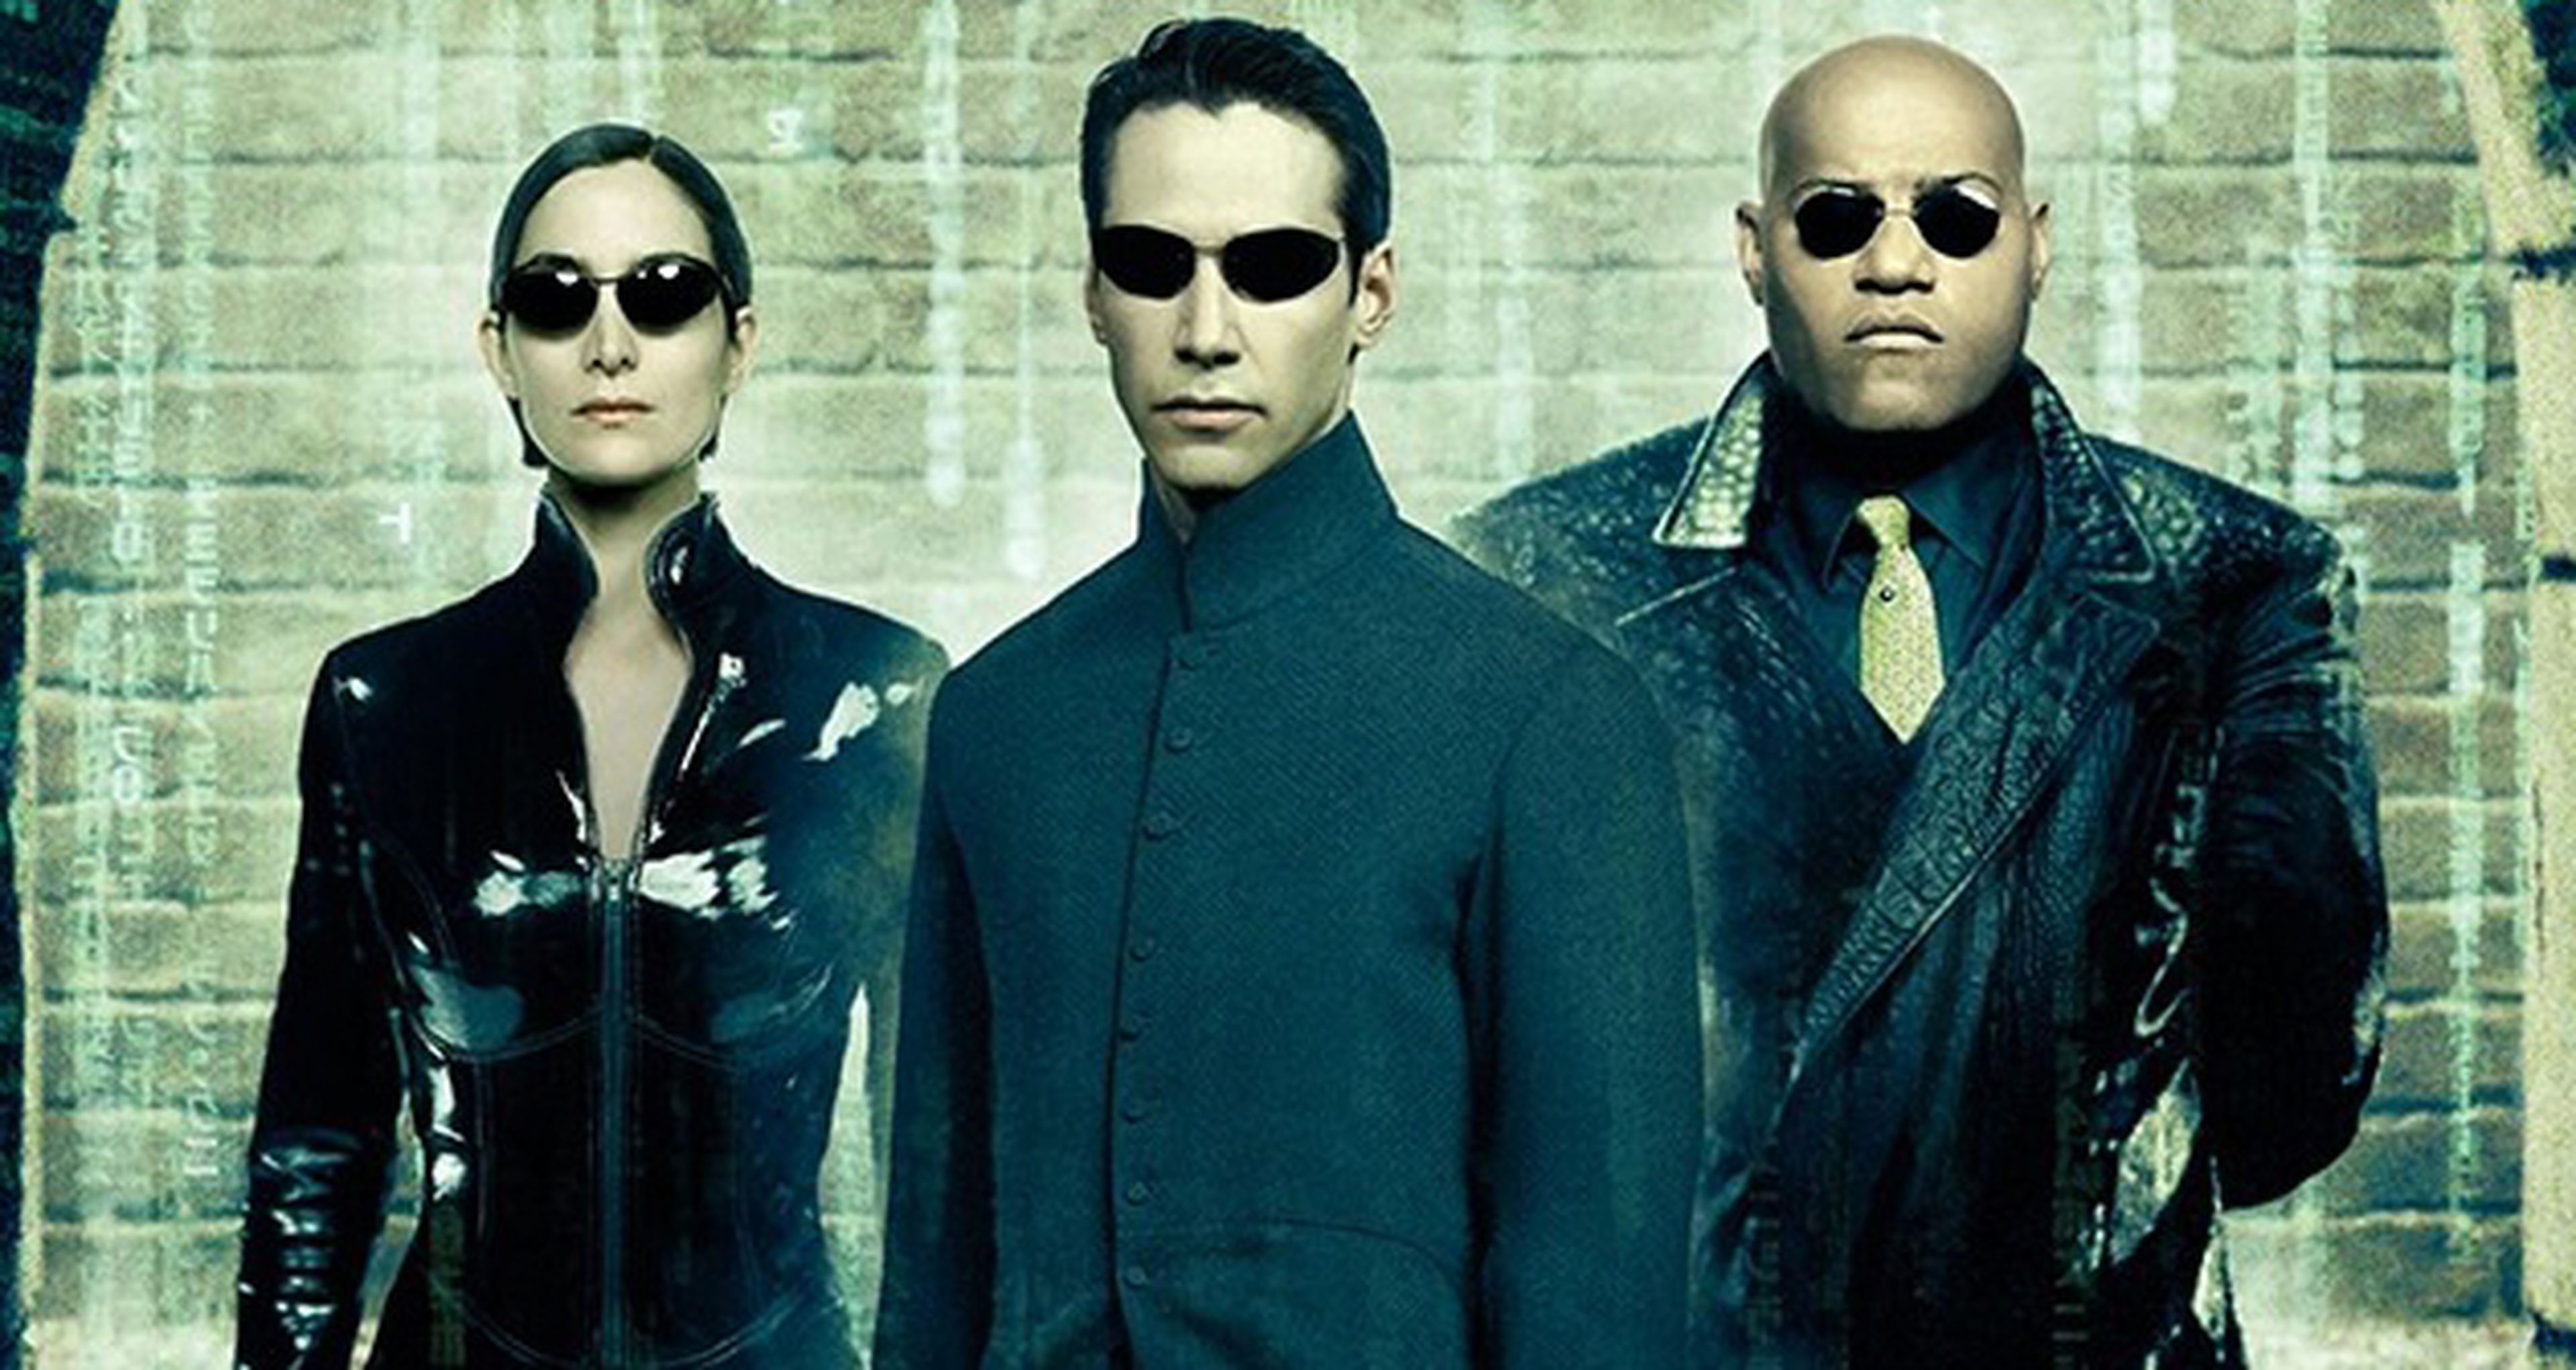 Cine de ciencia ficción: Matrix Reloaded